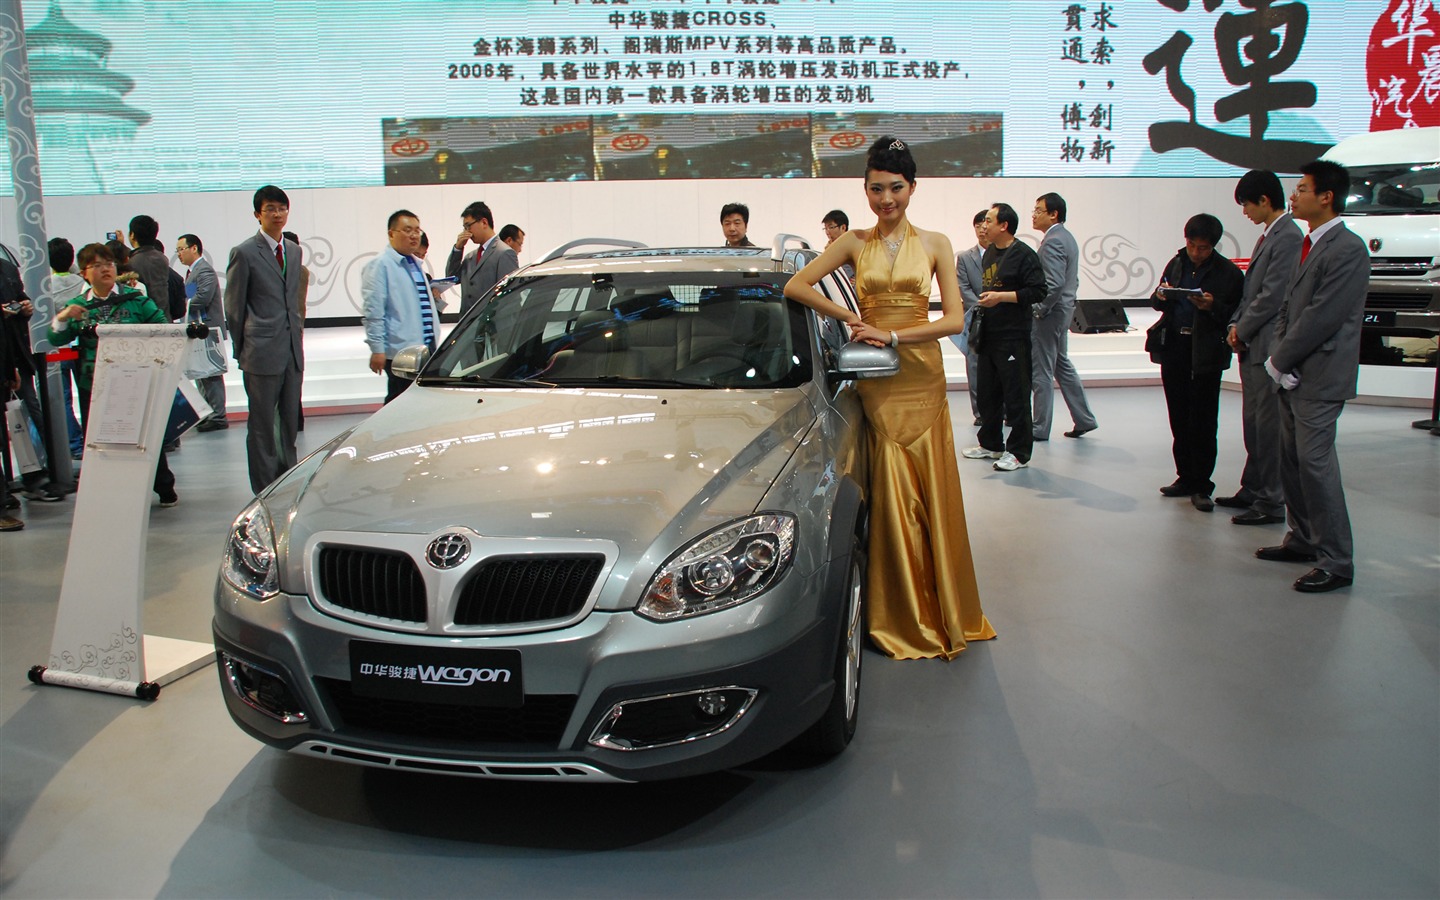 2010北京国际车展(一) (z321x123作品)18 - 1440x900